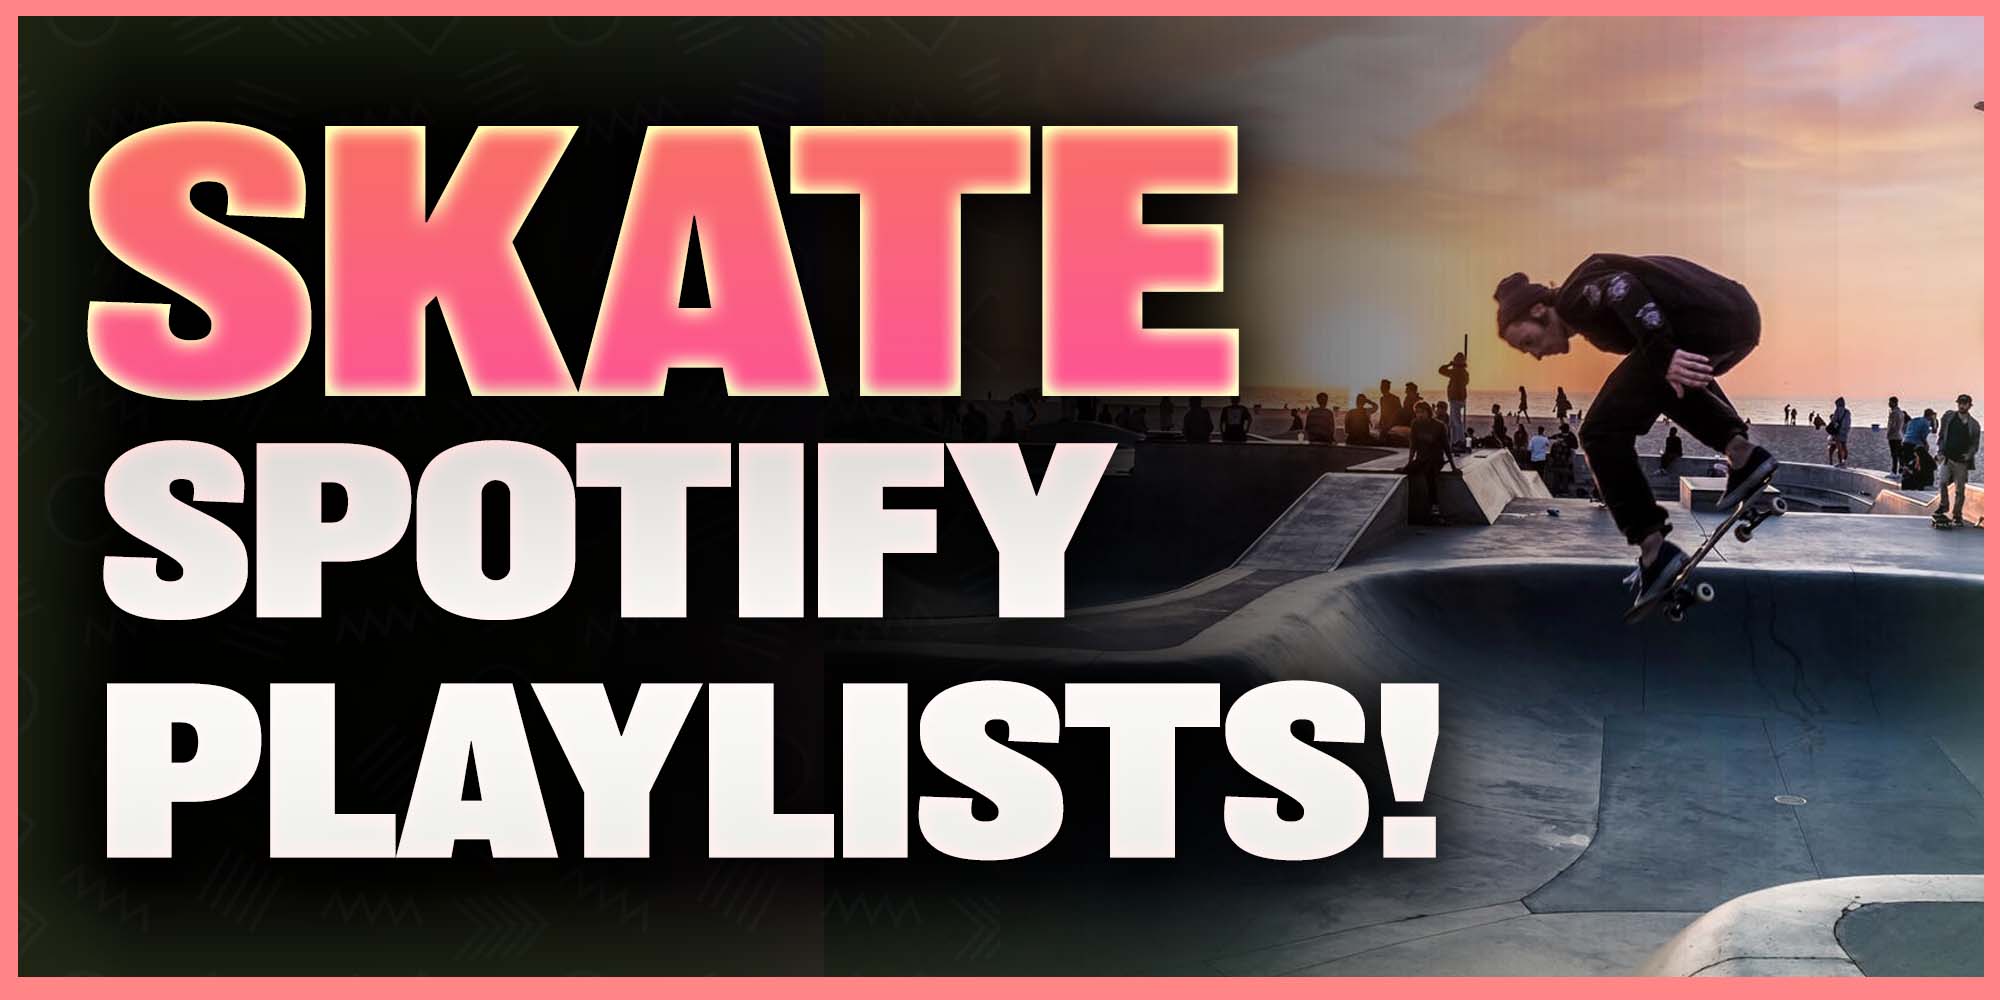 Skateboarding Spotify Playlists